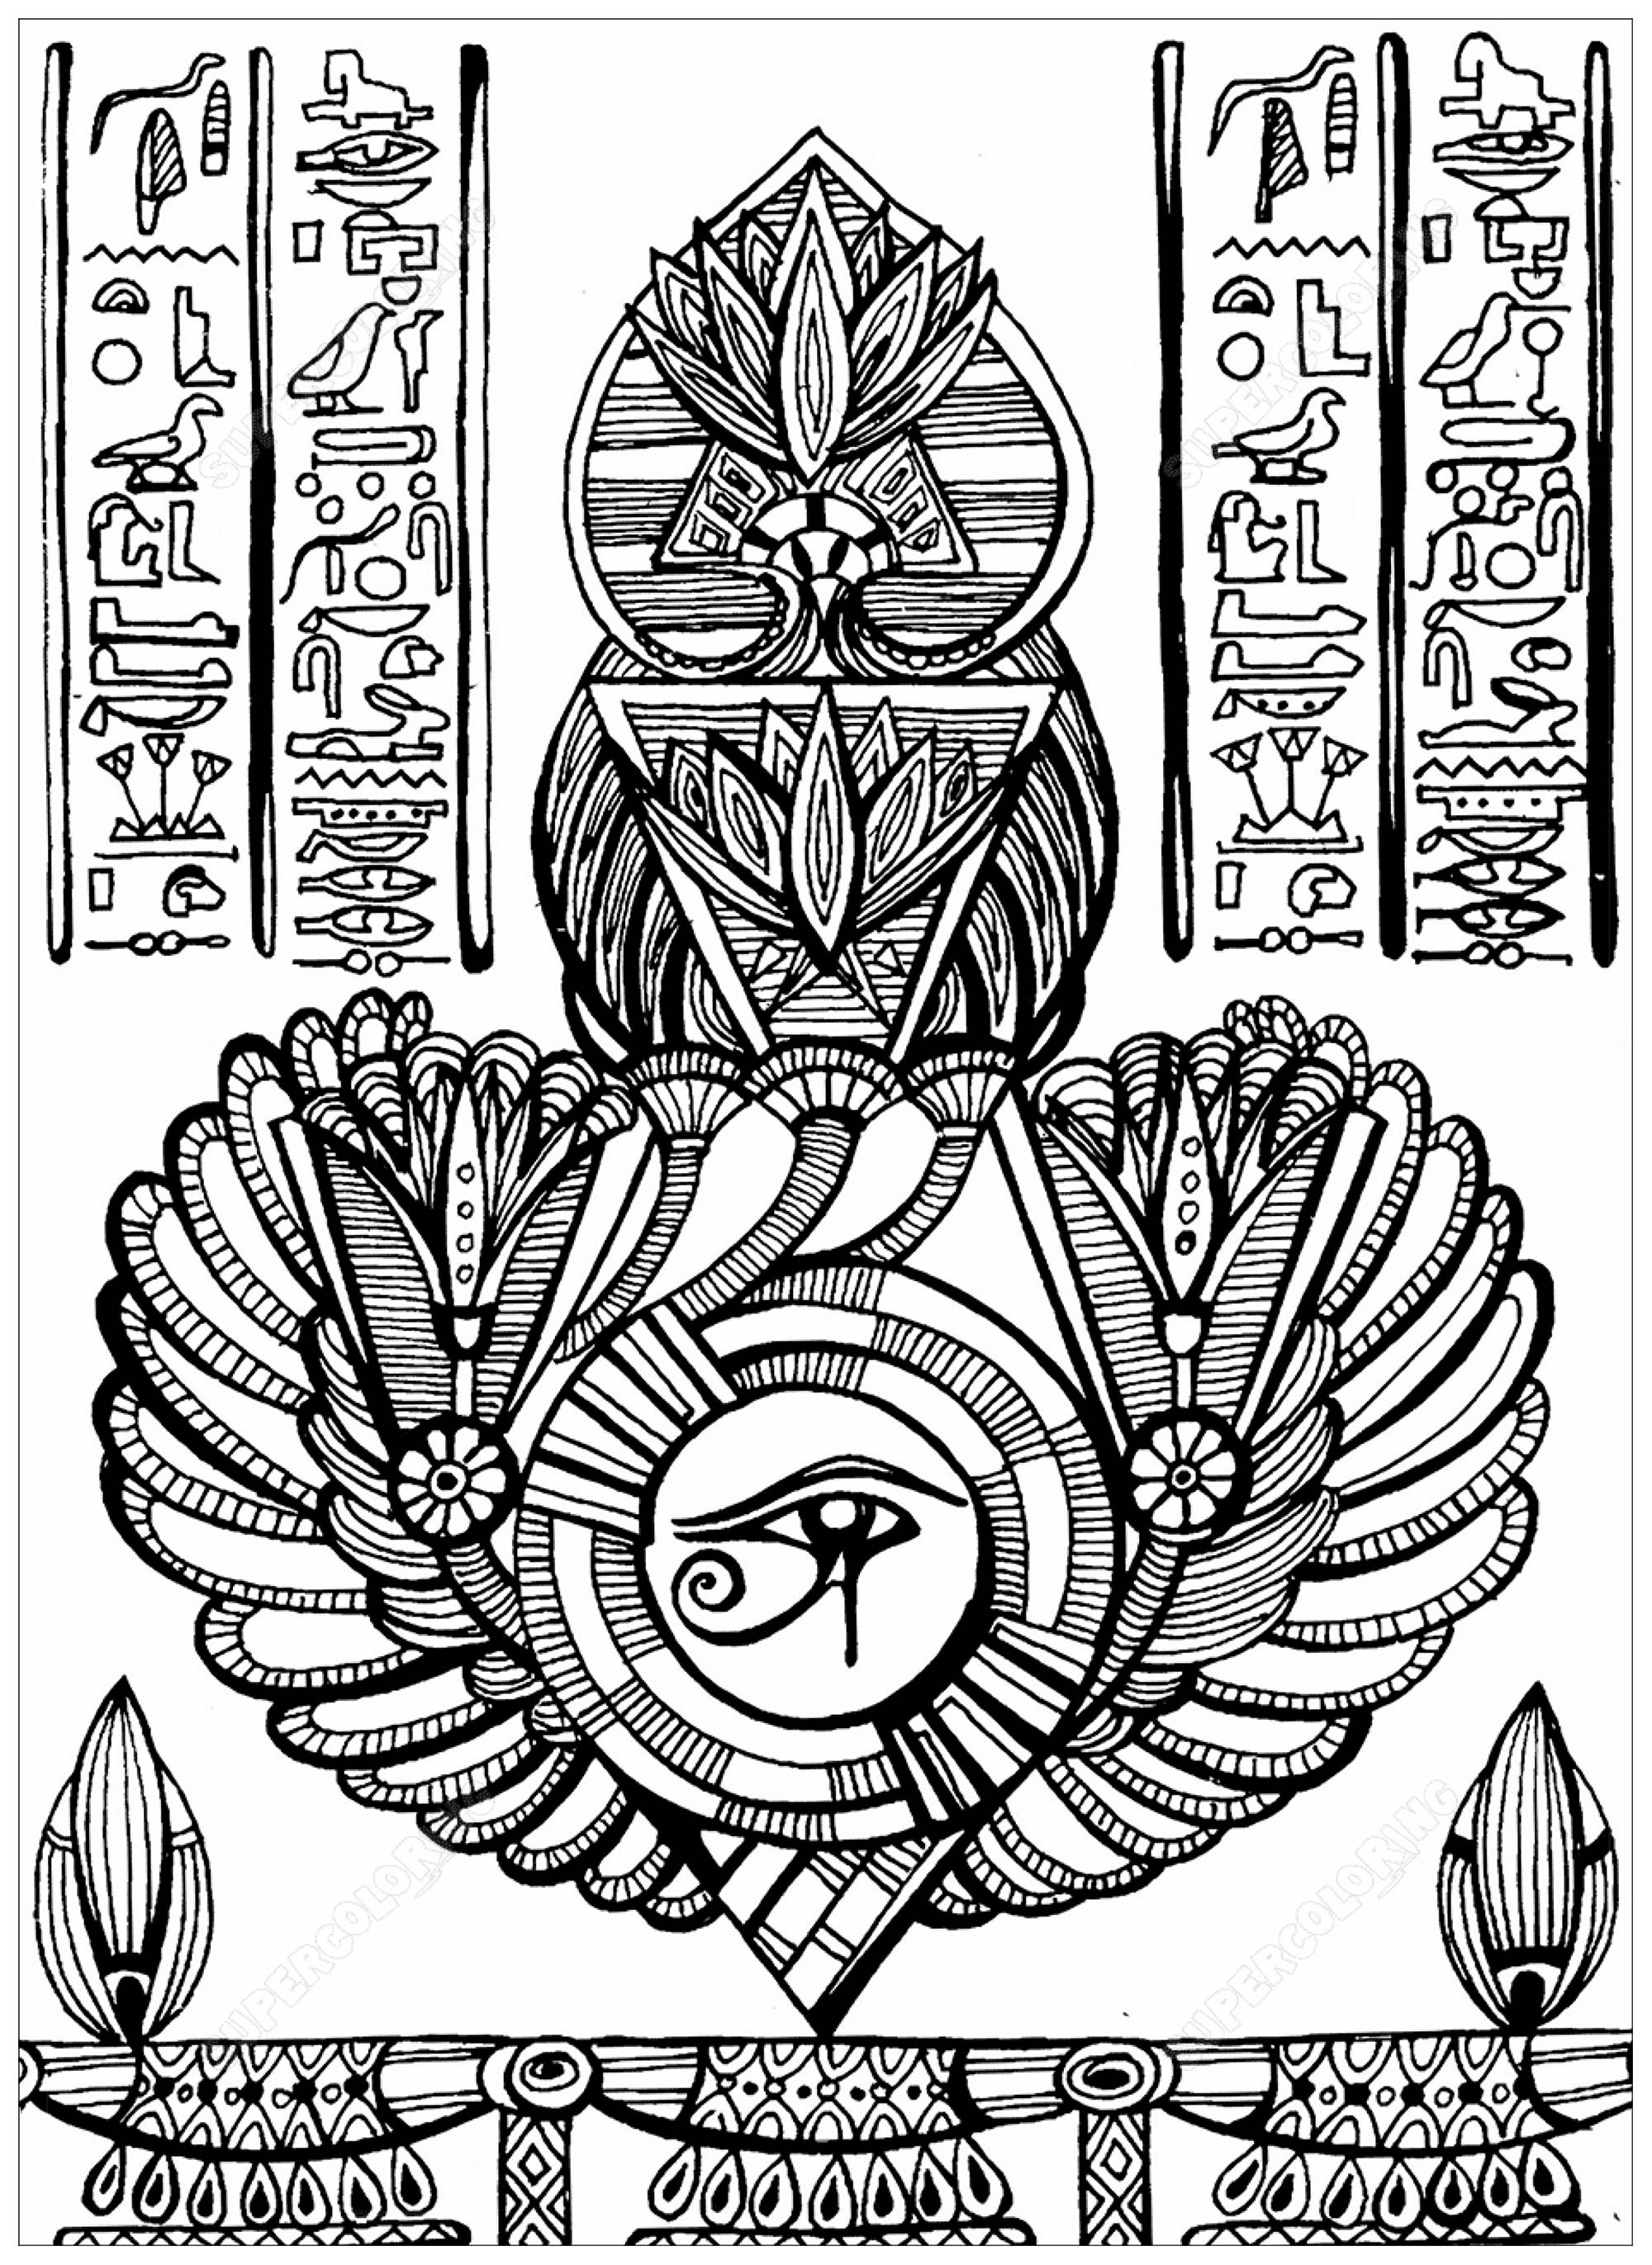 Olho de Hórus (antigo símbolo egípcio de proteção, poder real e boa saúde) e outros elementos, Artista : Krivosheeva Olga (Ori Akuma)   Fonte : Supercoloring